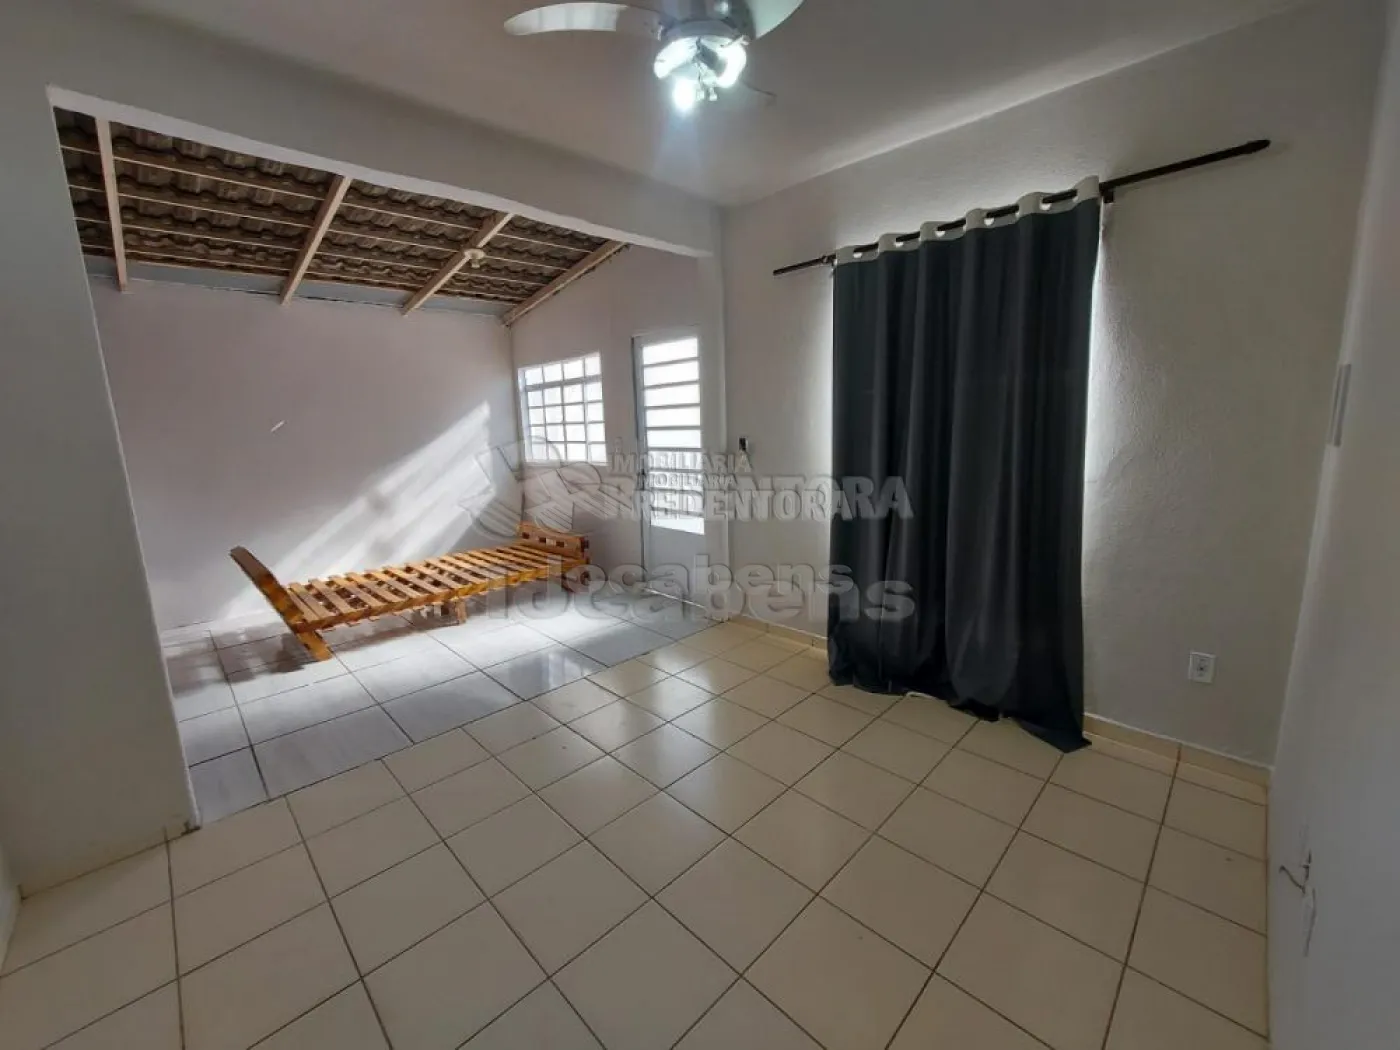 Comprar Casa / Padrão em São José do Rio Preto apenas R$ 265.000,00 - Foto 4